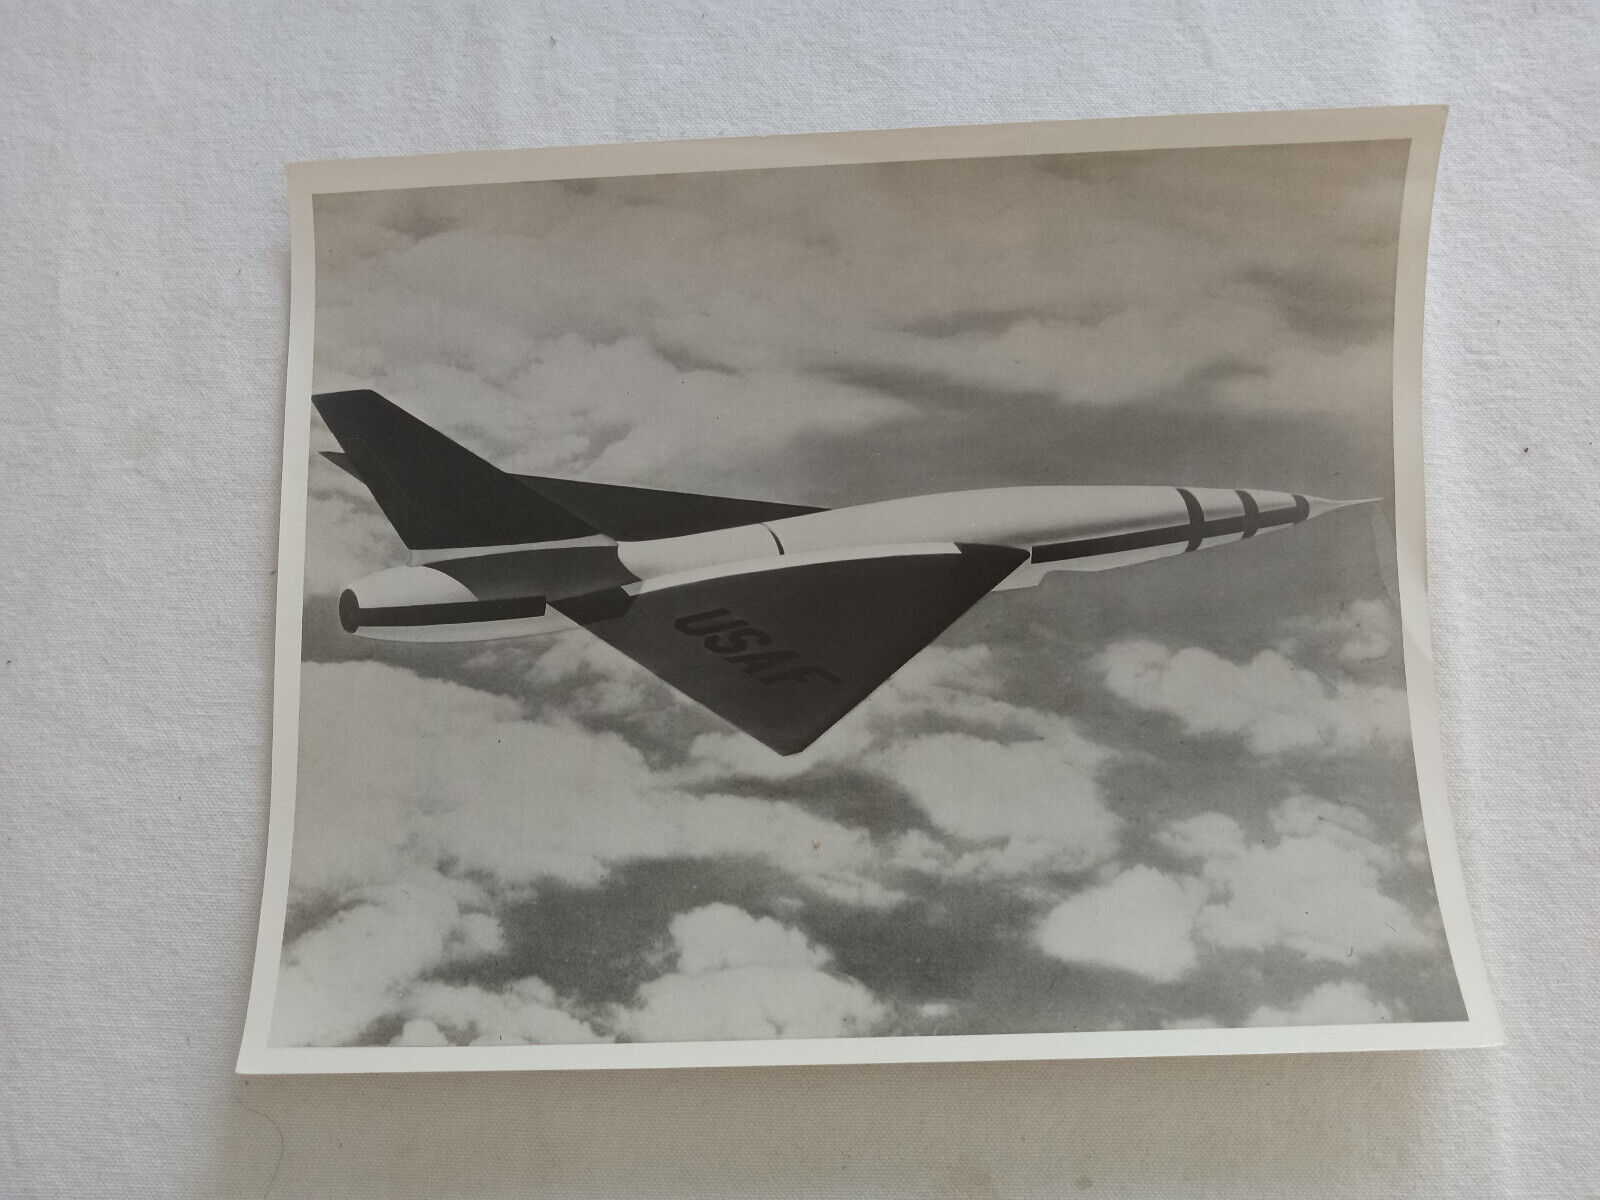 Fairchild Goose Missile test in flight Vintage Photo USAF Patrick AFB SM-73? ‘58